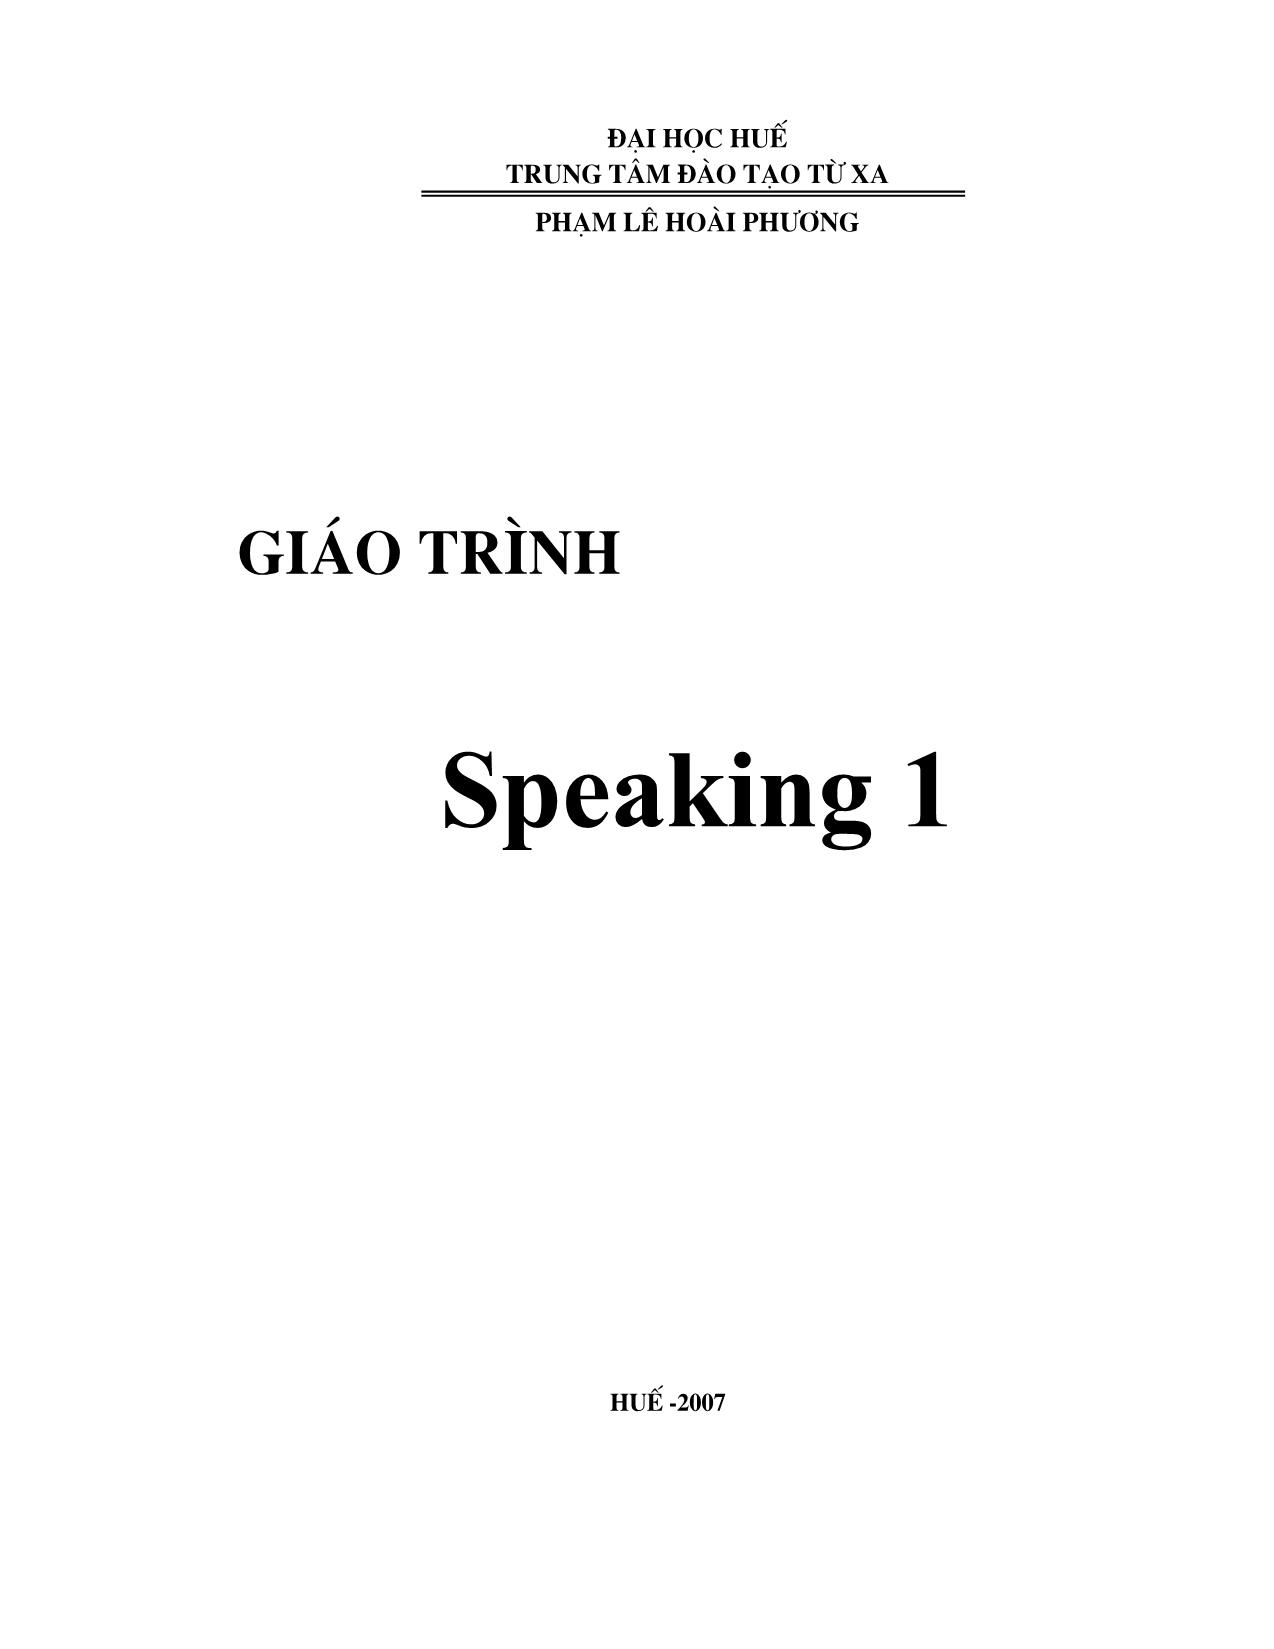 Giáo trình Speaking 1 trang 1